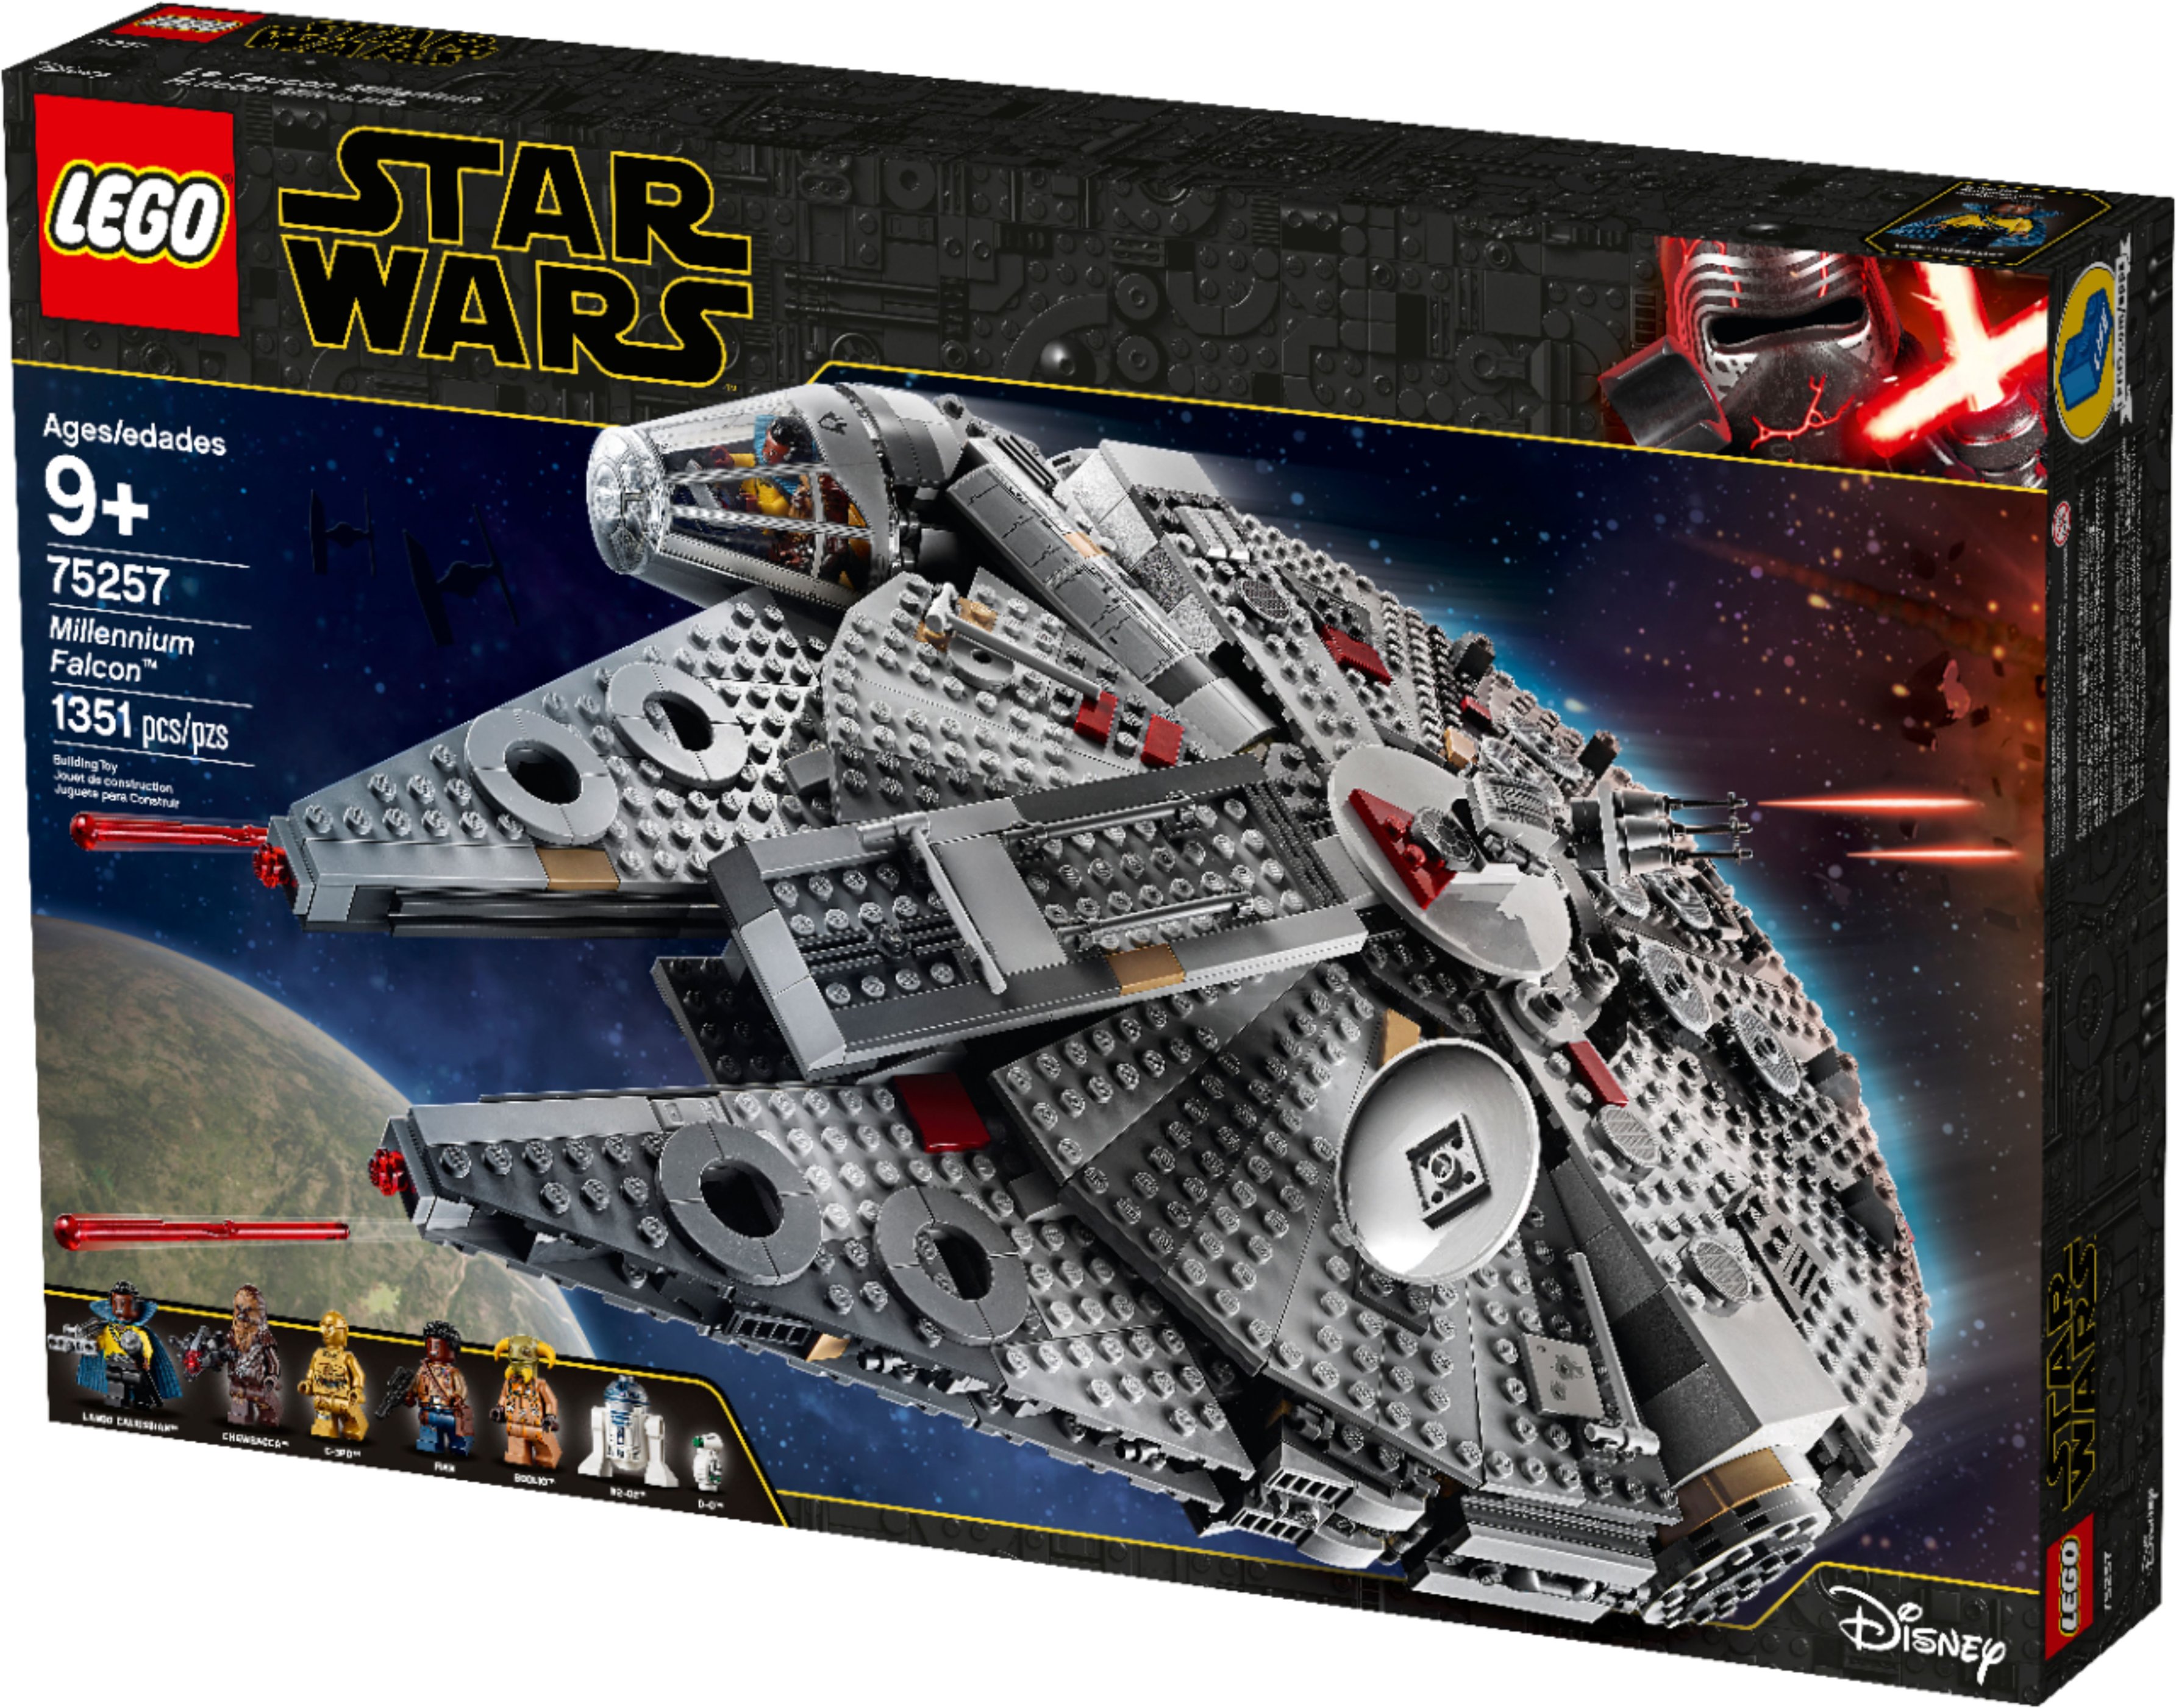 LEGO Wars Millennium 6251770 - Best Buy